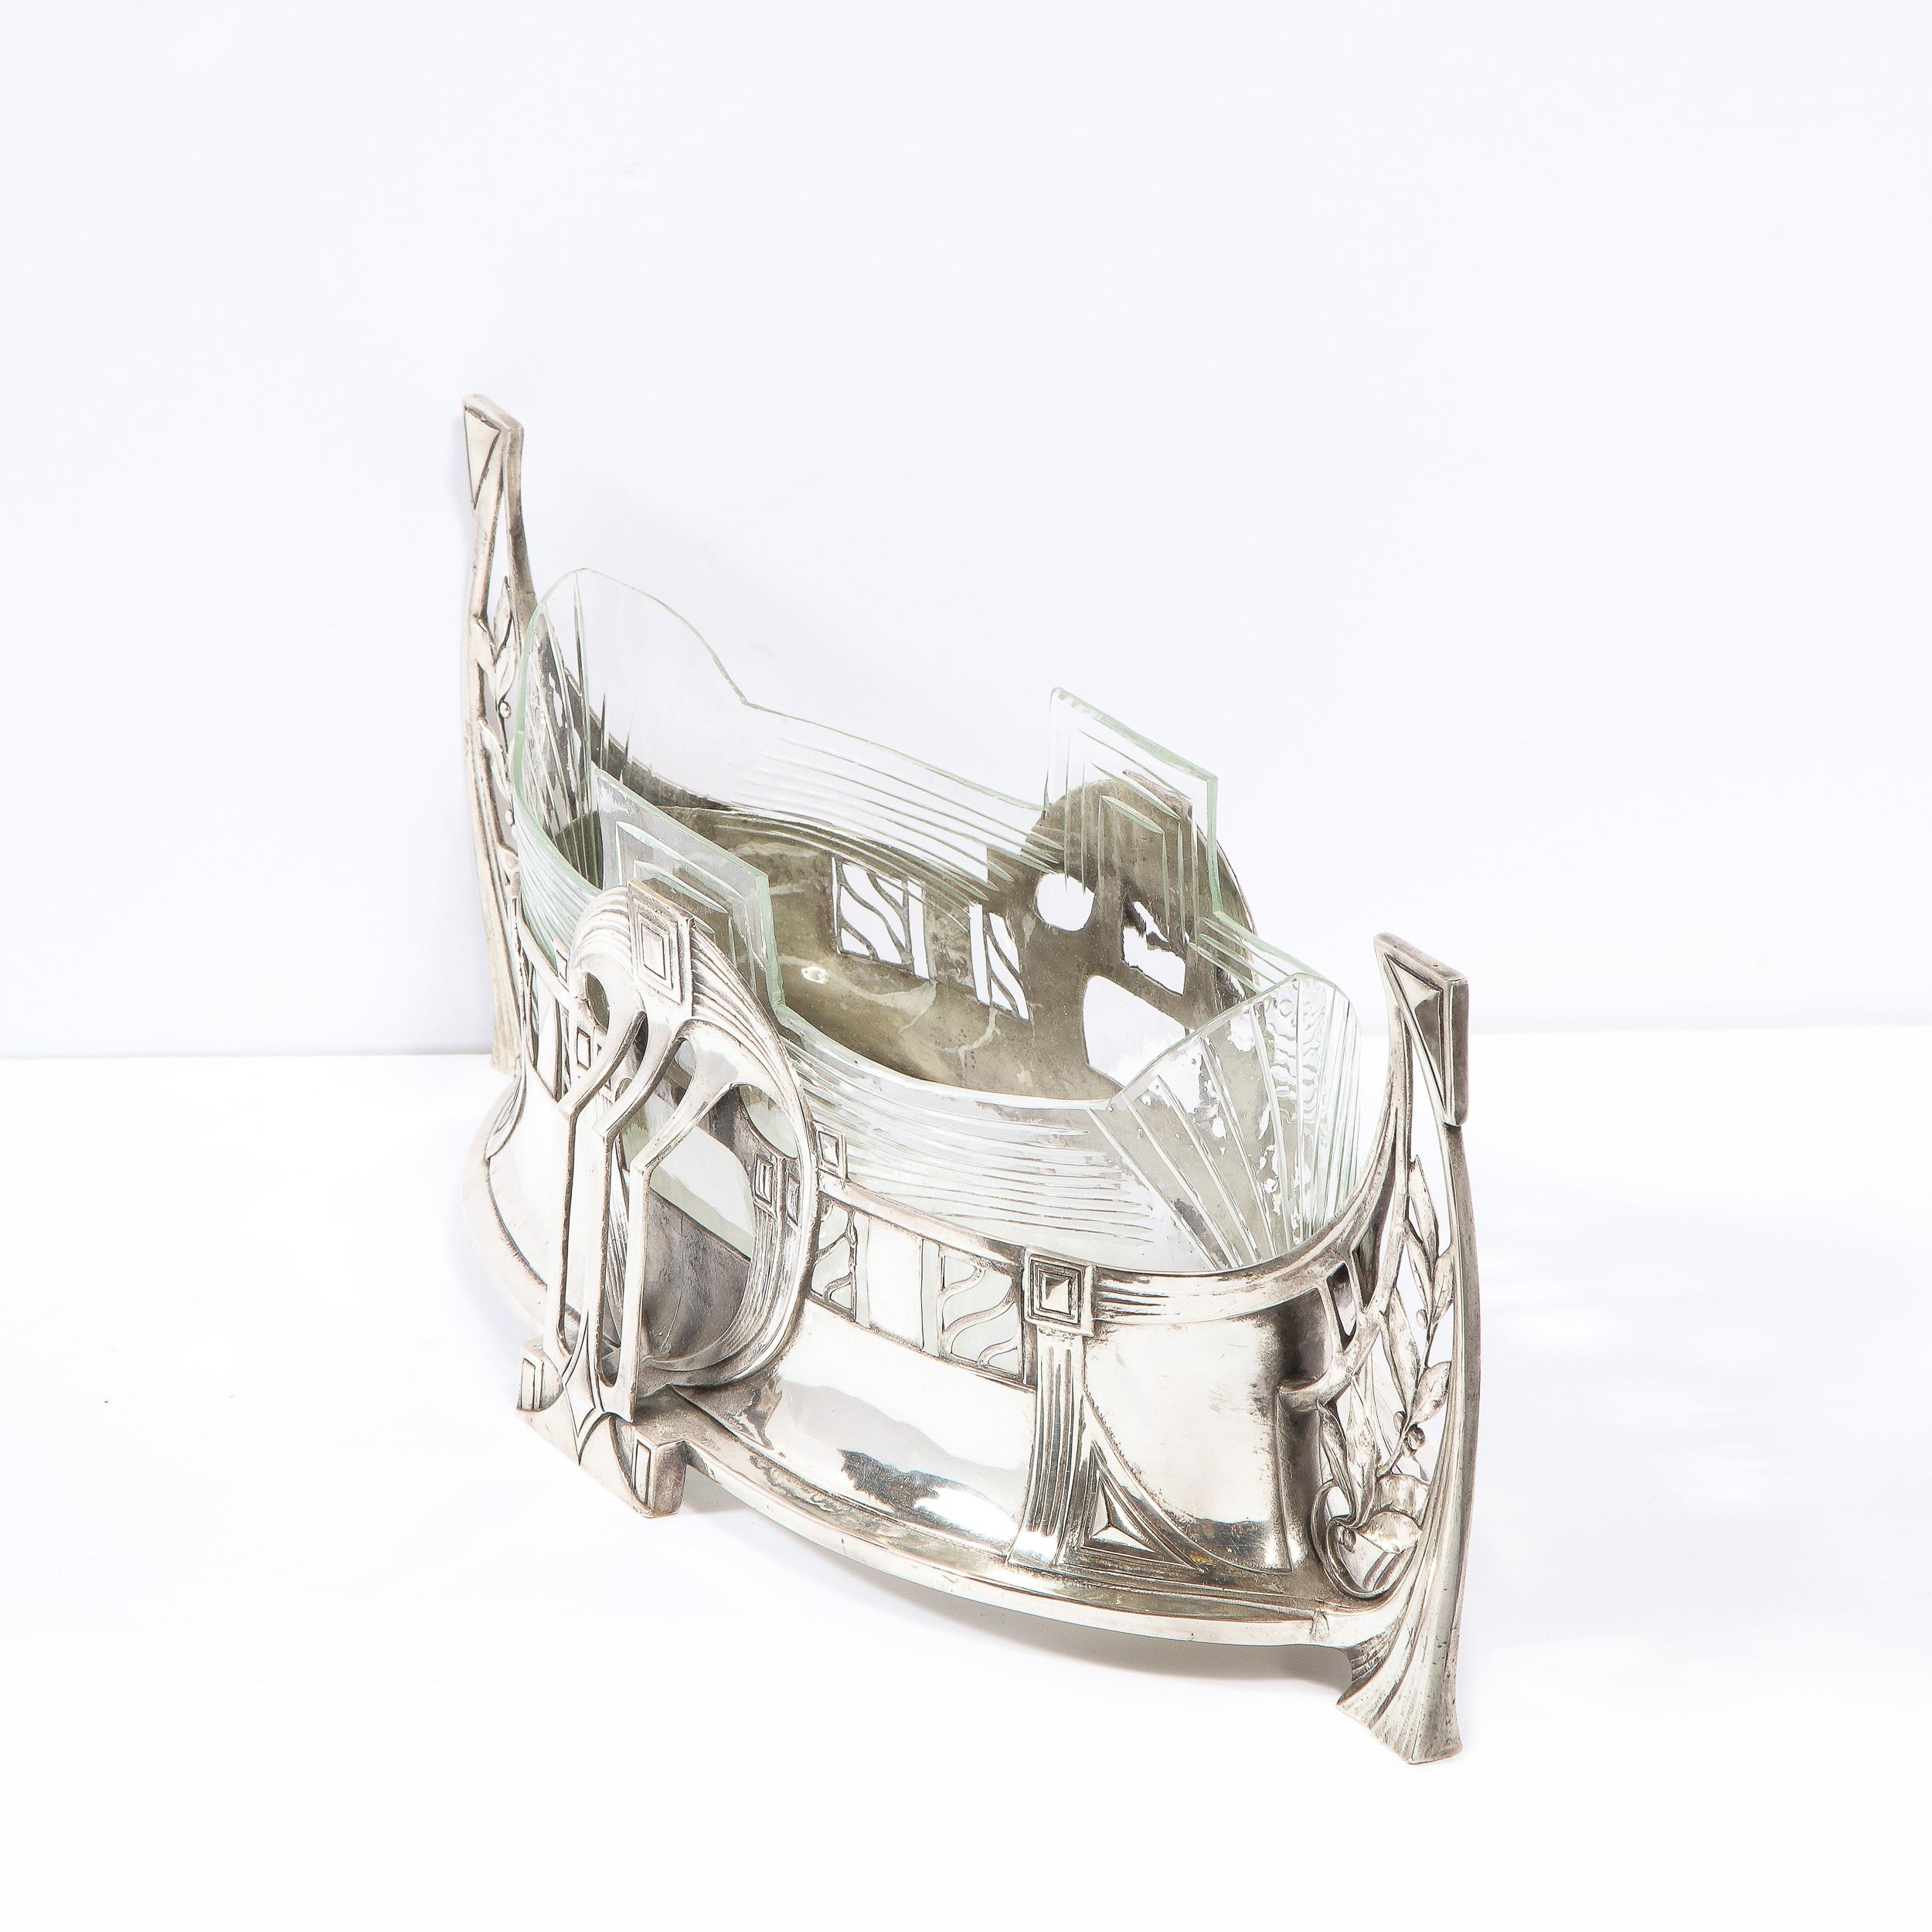 WMF Art Deco Sculptural Silverplate Centerpiece w/ Geometric & Foliate Motifs For Sale 5